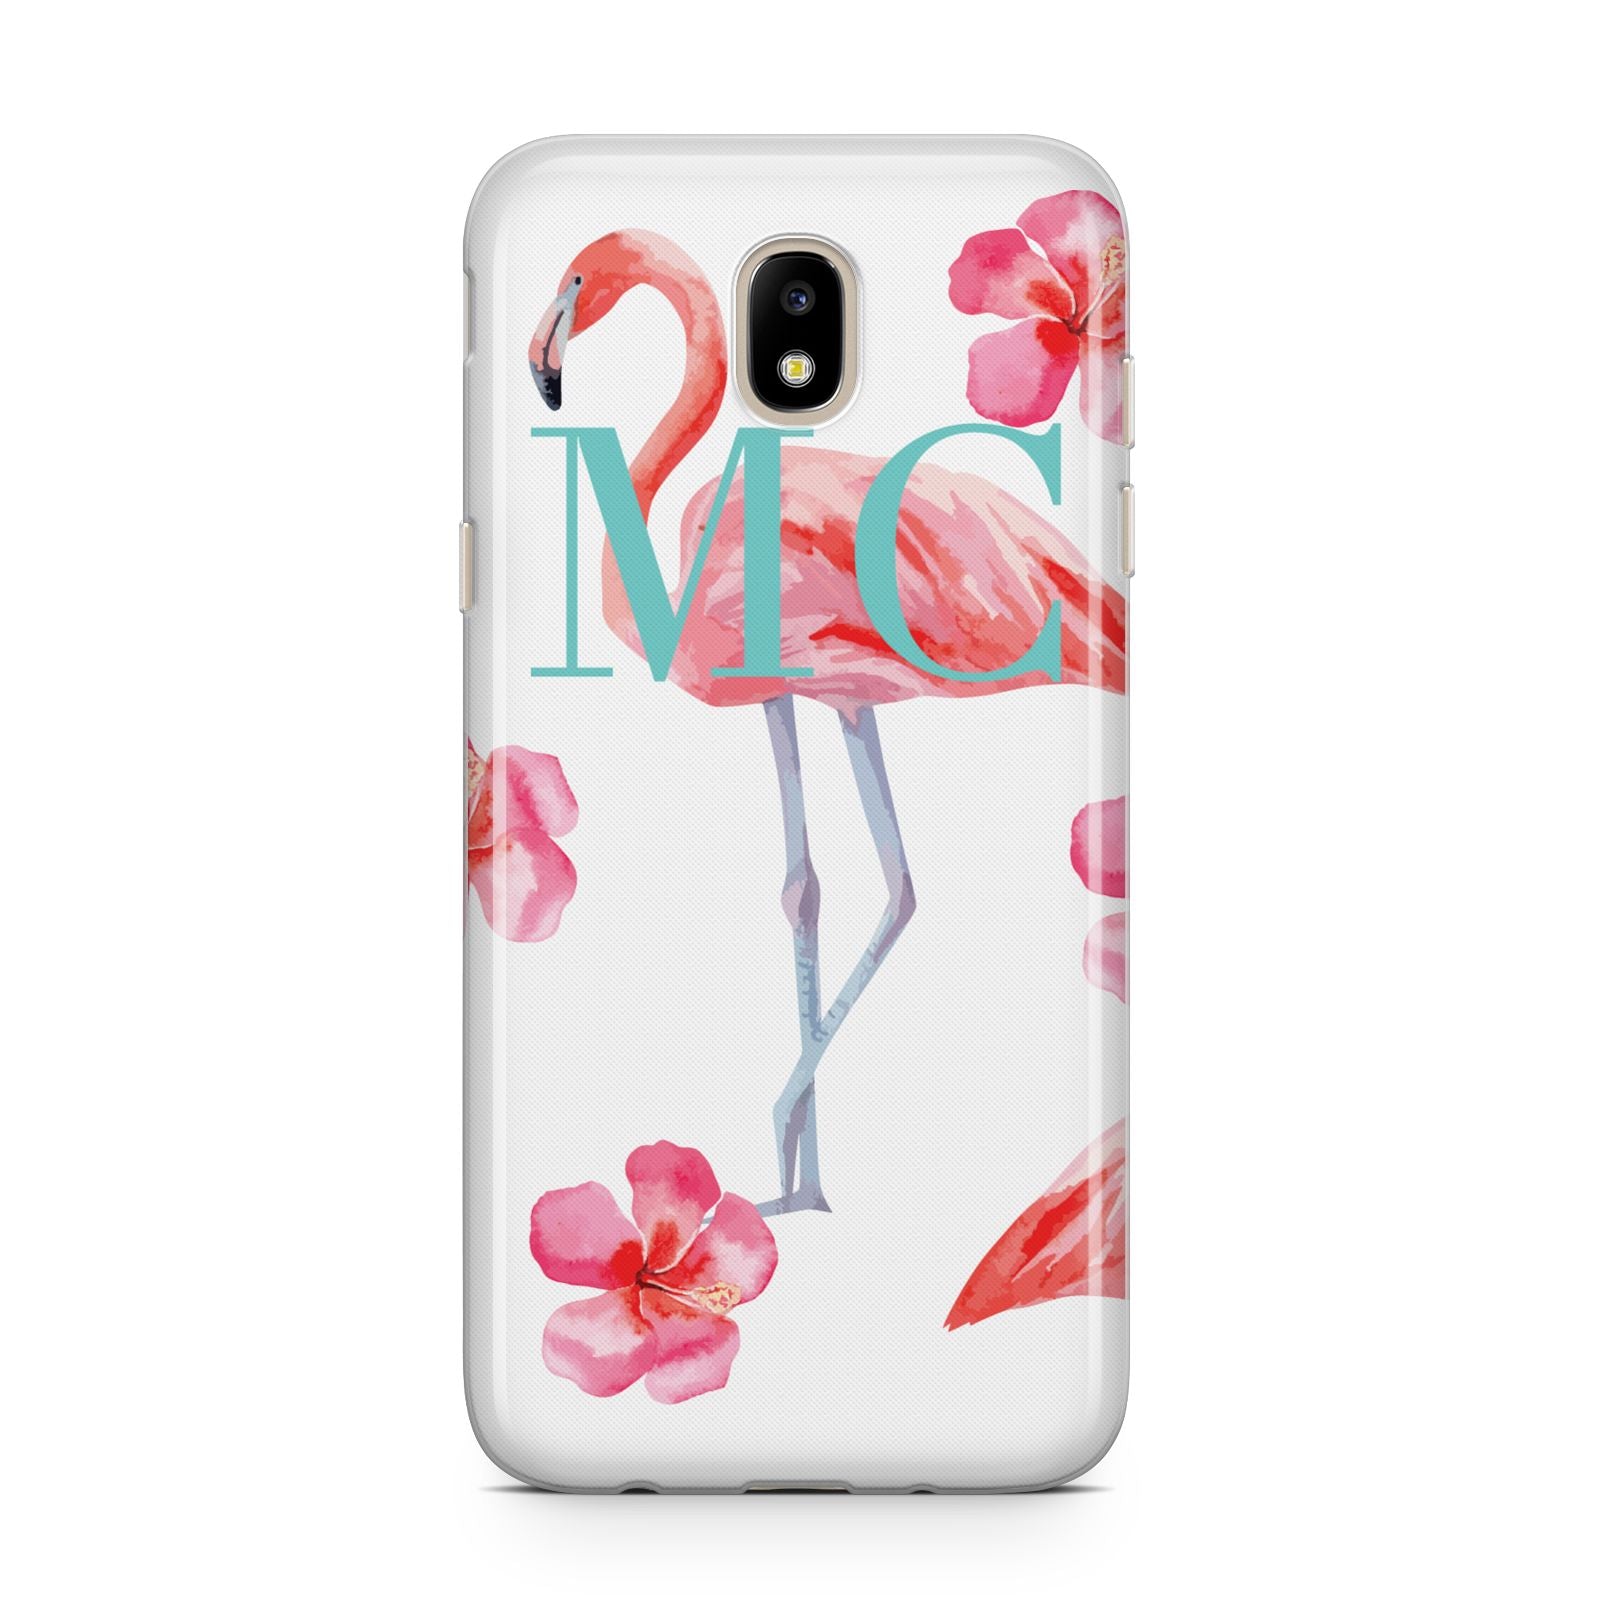 Personalised Initials Flamingo 3 Samsung J5 2017 Case